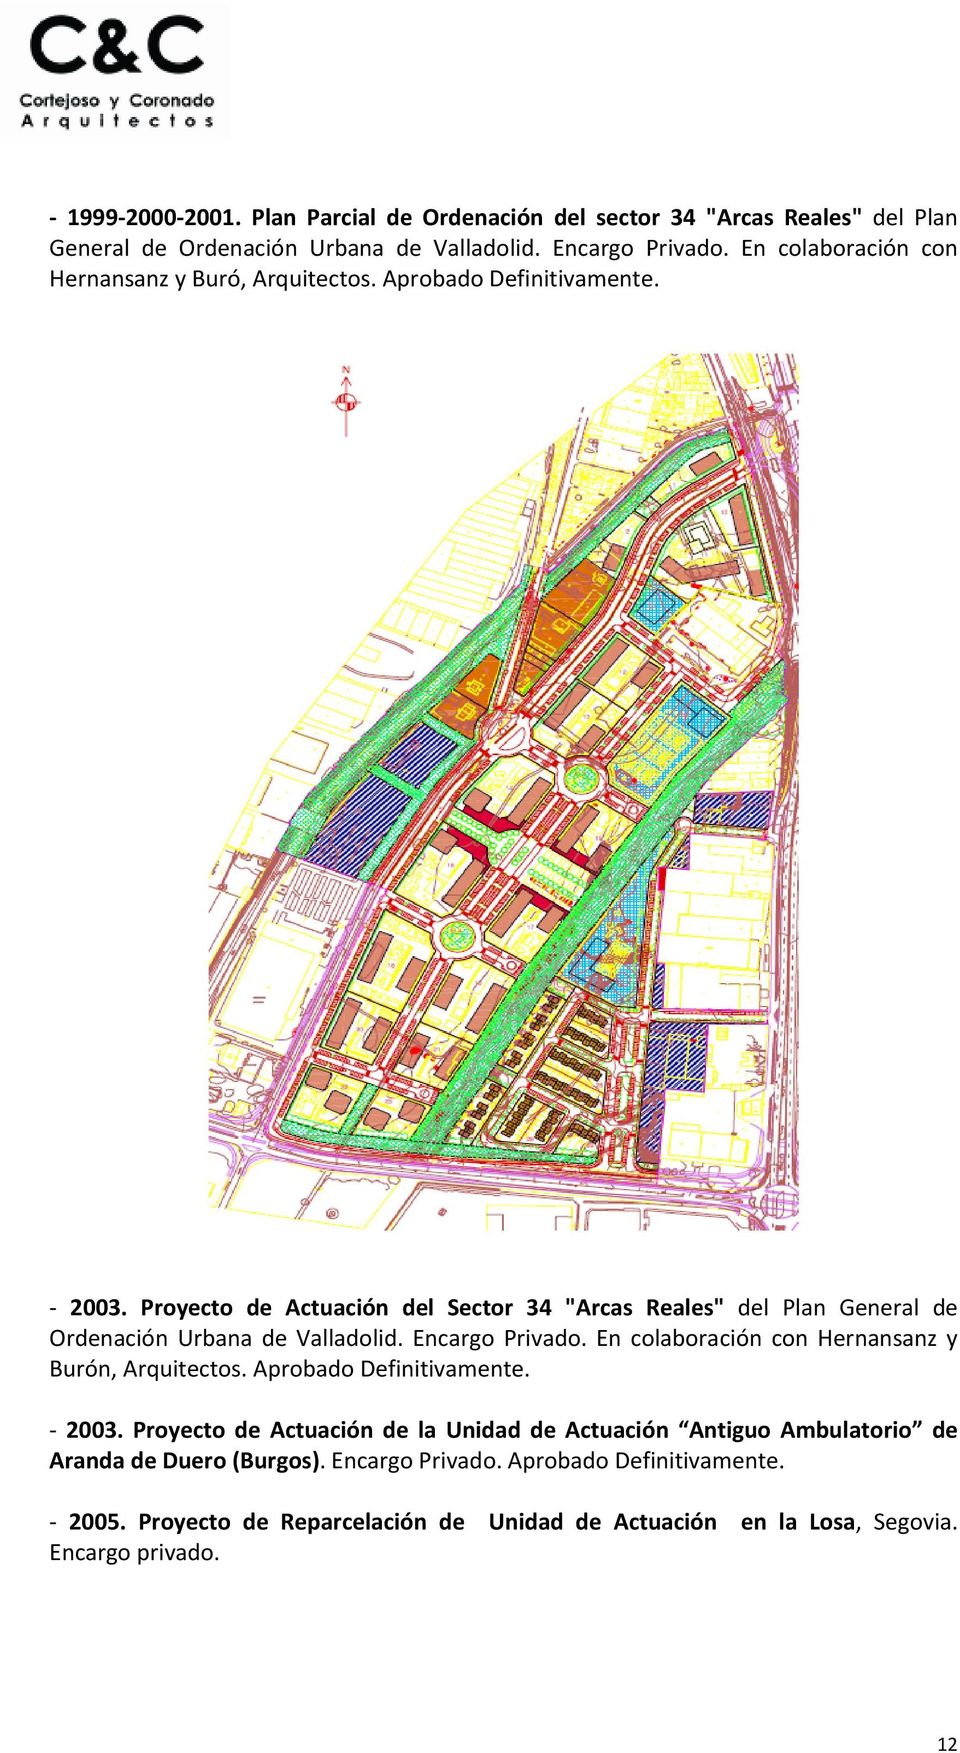 Proyecto de Actuación del Sector 34 "Arcas Reales" del Plan General de Ordenación Urbana de Valladolid. Encargo Privado.